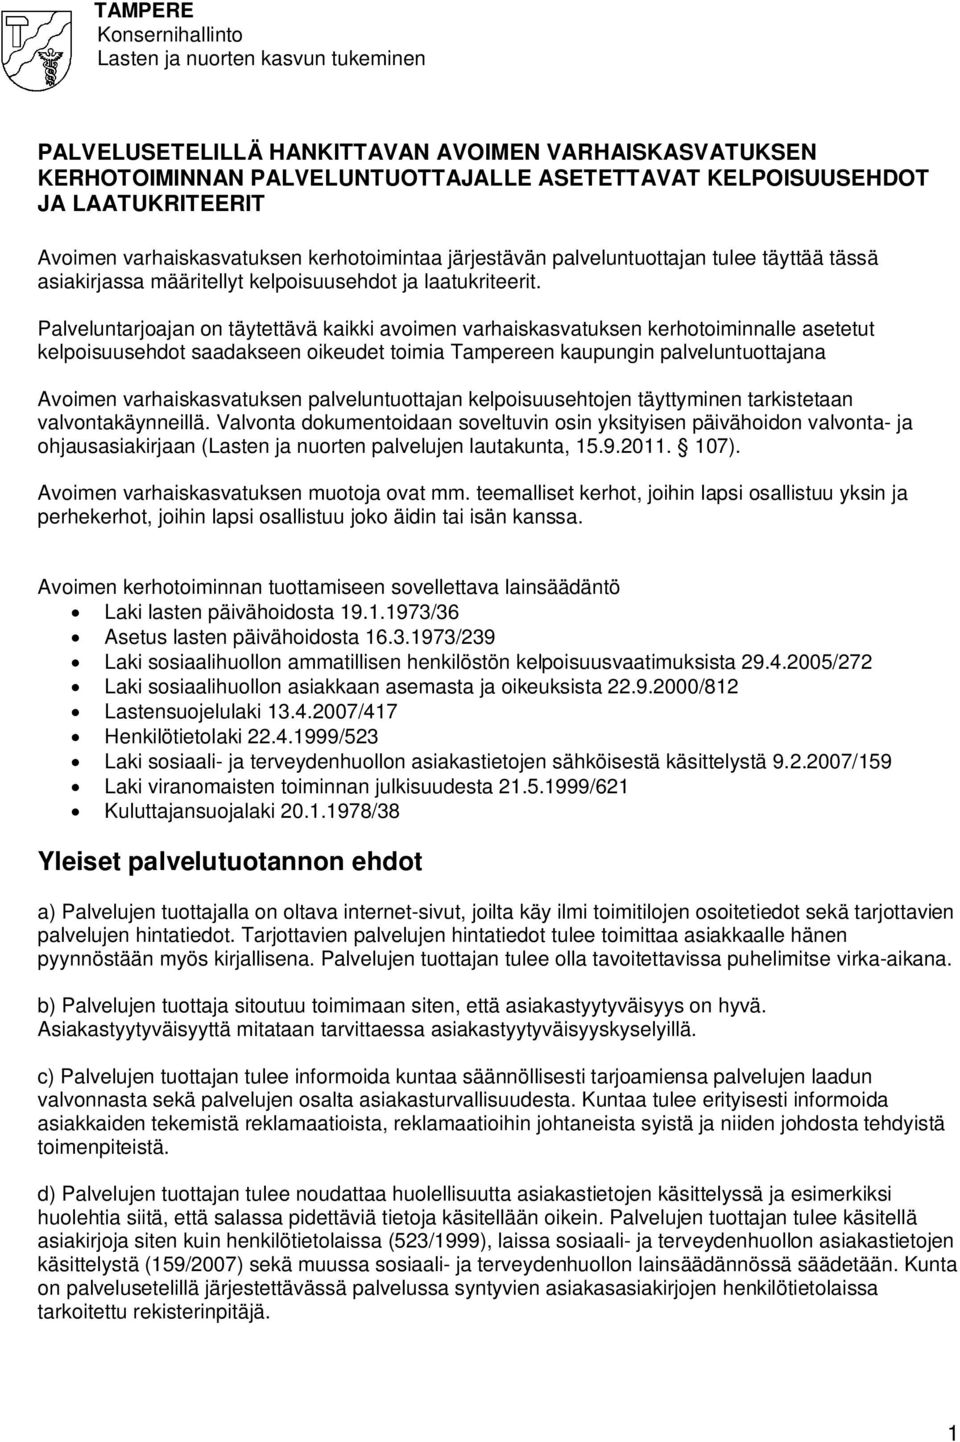 Palveluntarjoajan on täytettävä kaikki avoimen varhaiskasvatuksen kerhotoiminnalle asetetut kelpoisuusehdot saadakseen oikeudet toimia Tampereen kaupungin palveluntuottajana Avoimen